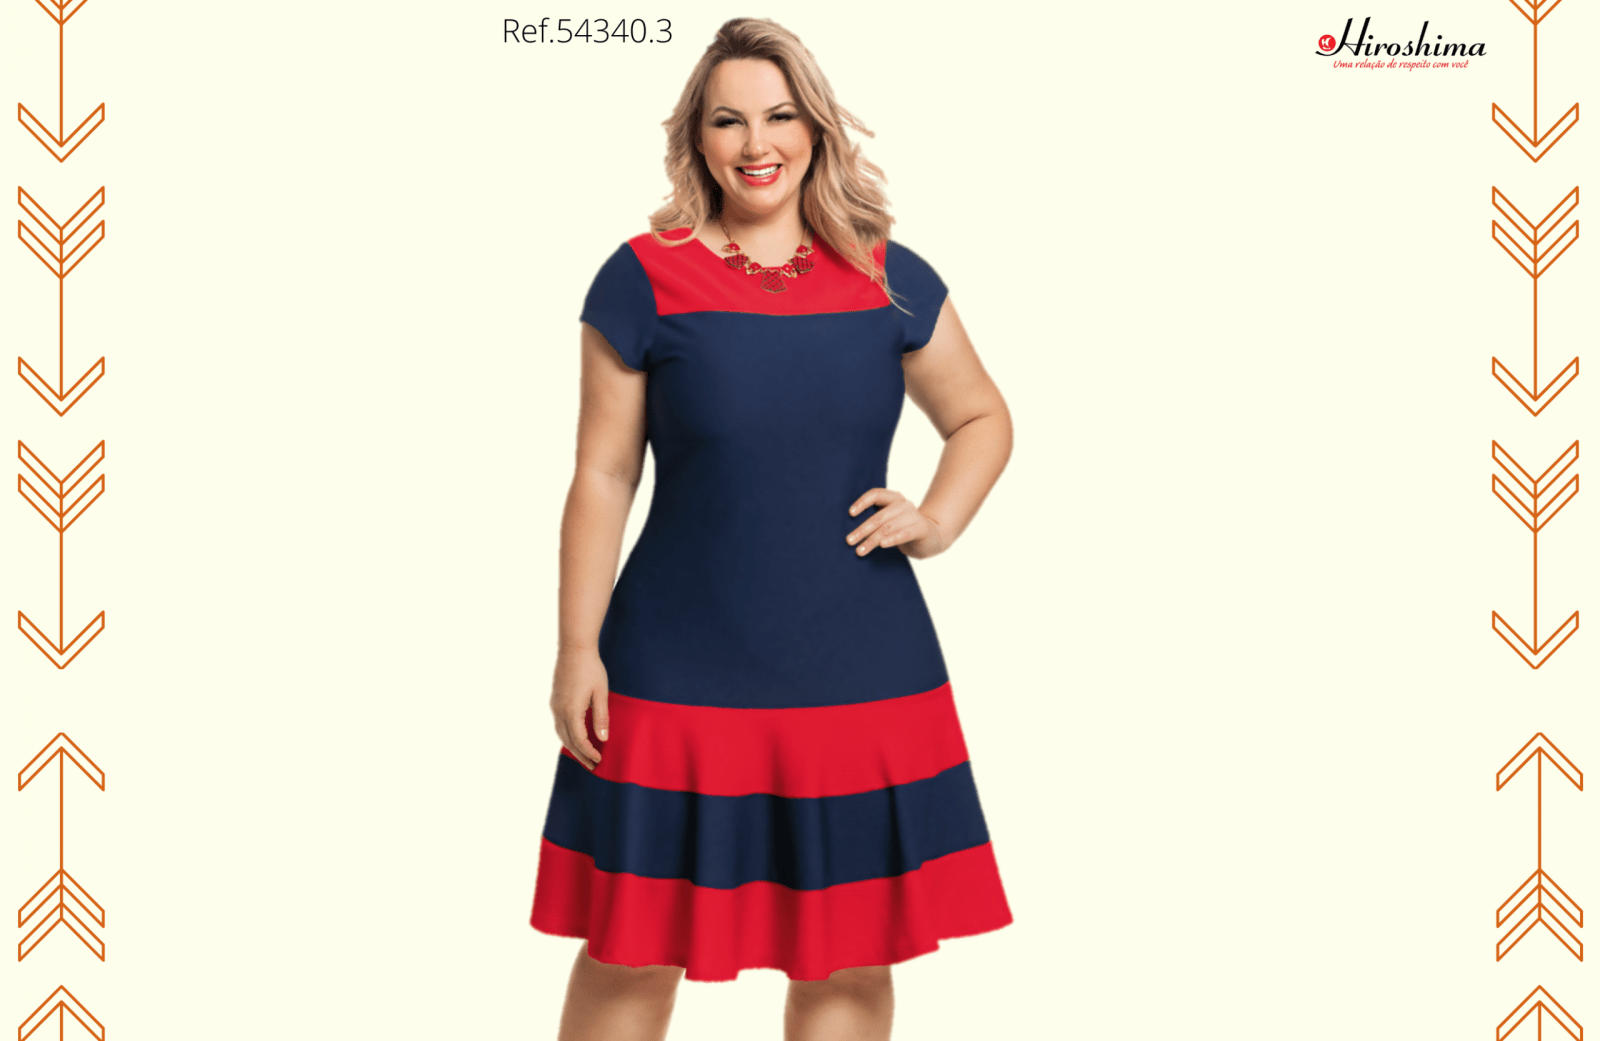 Conhecendo os principais estilos que sempre estão na moda - Vestido listrado vermelho e azul Ref.54340.3